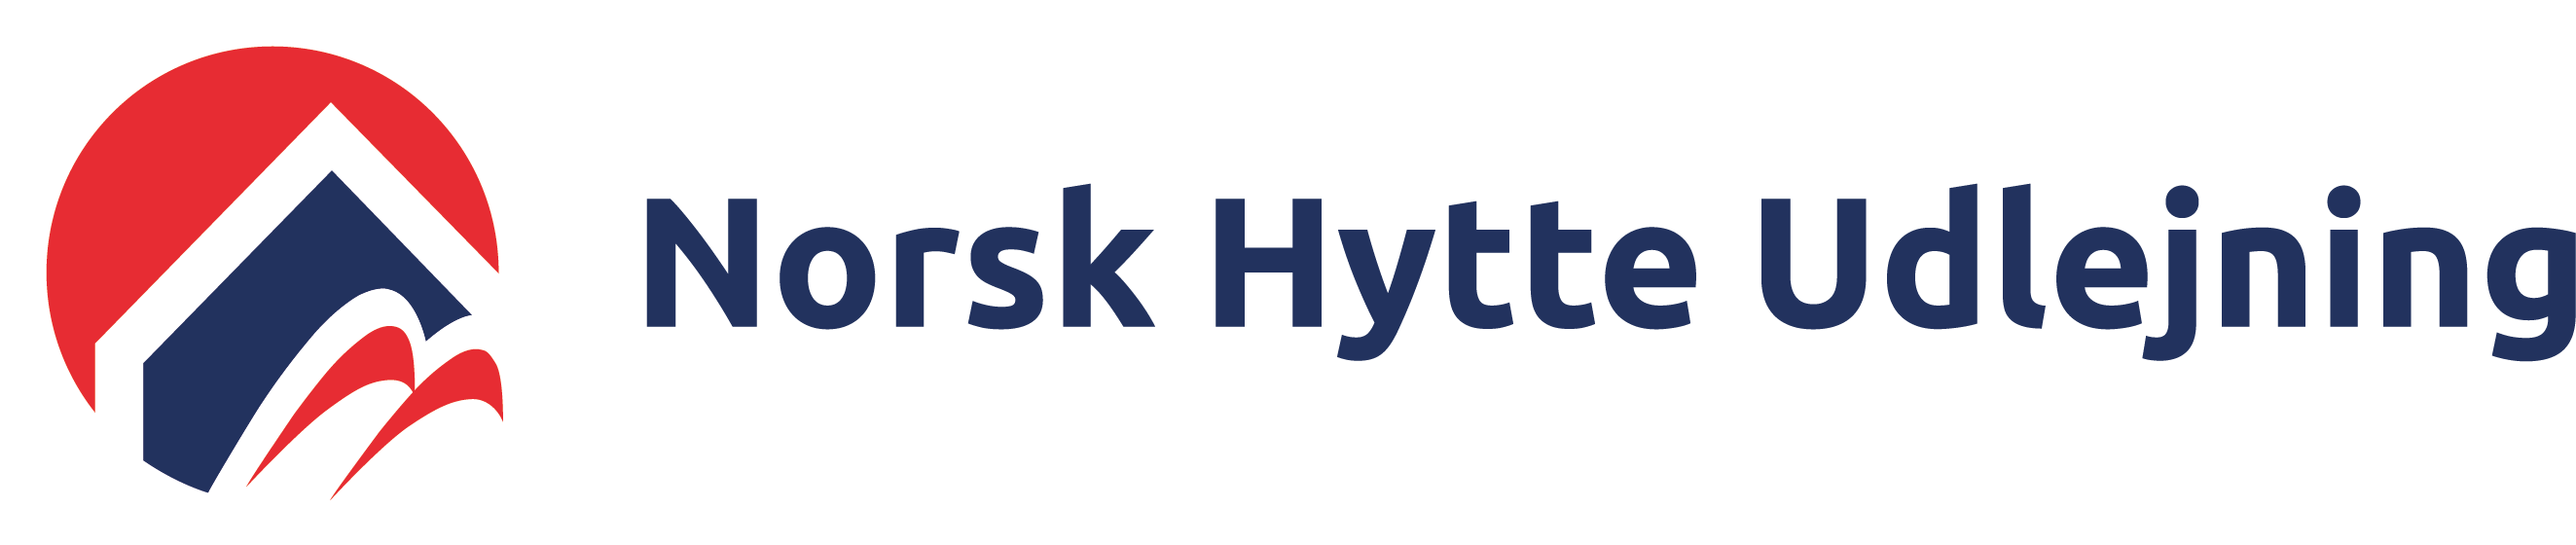 Norsk Hytte Udlejning logo